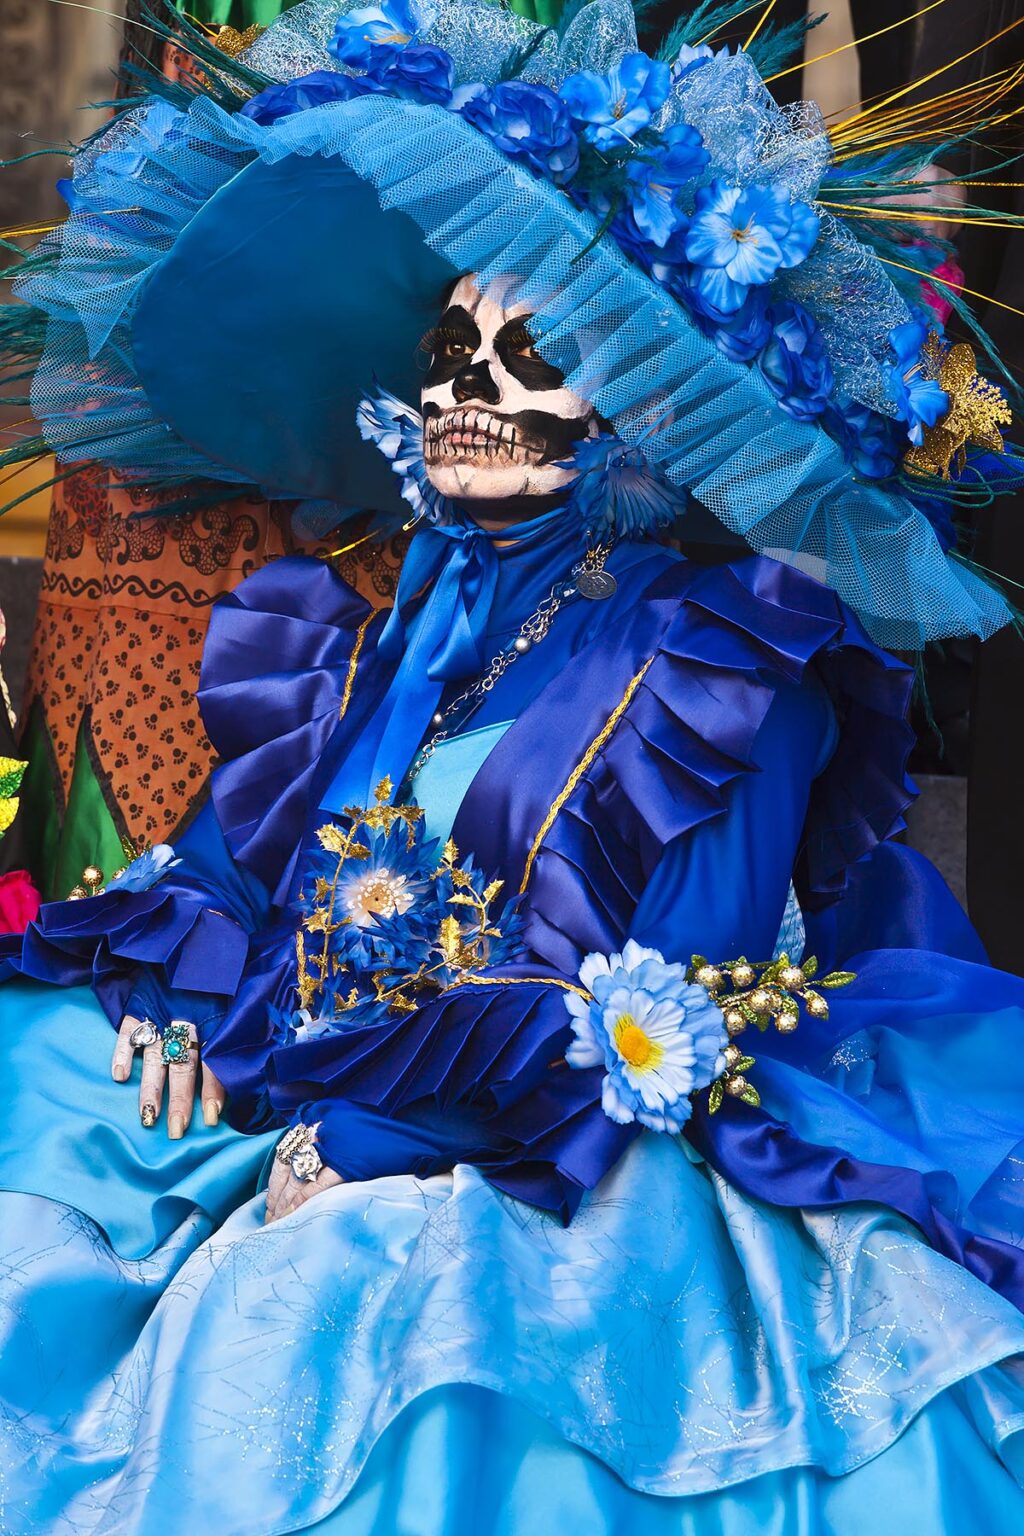 LA CALAVERA CATRINA or Elegant Skull, is the icon of the DAY OF THE DEAD - GUANAUATO, MEXICO